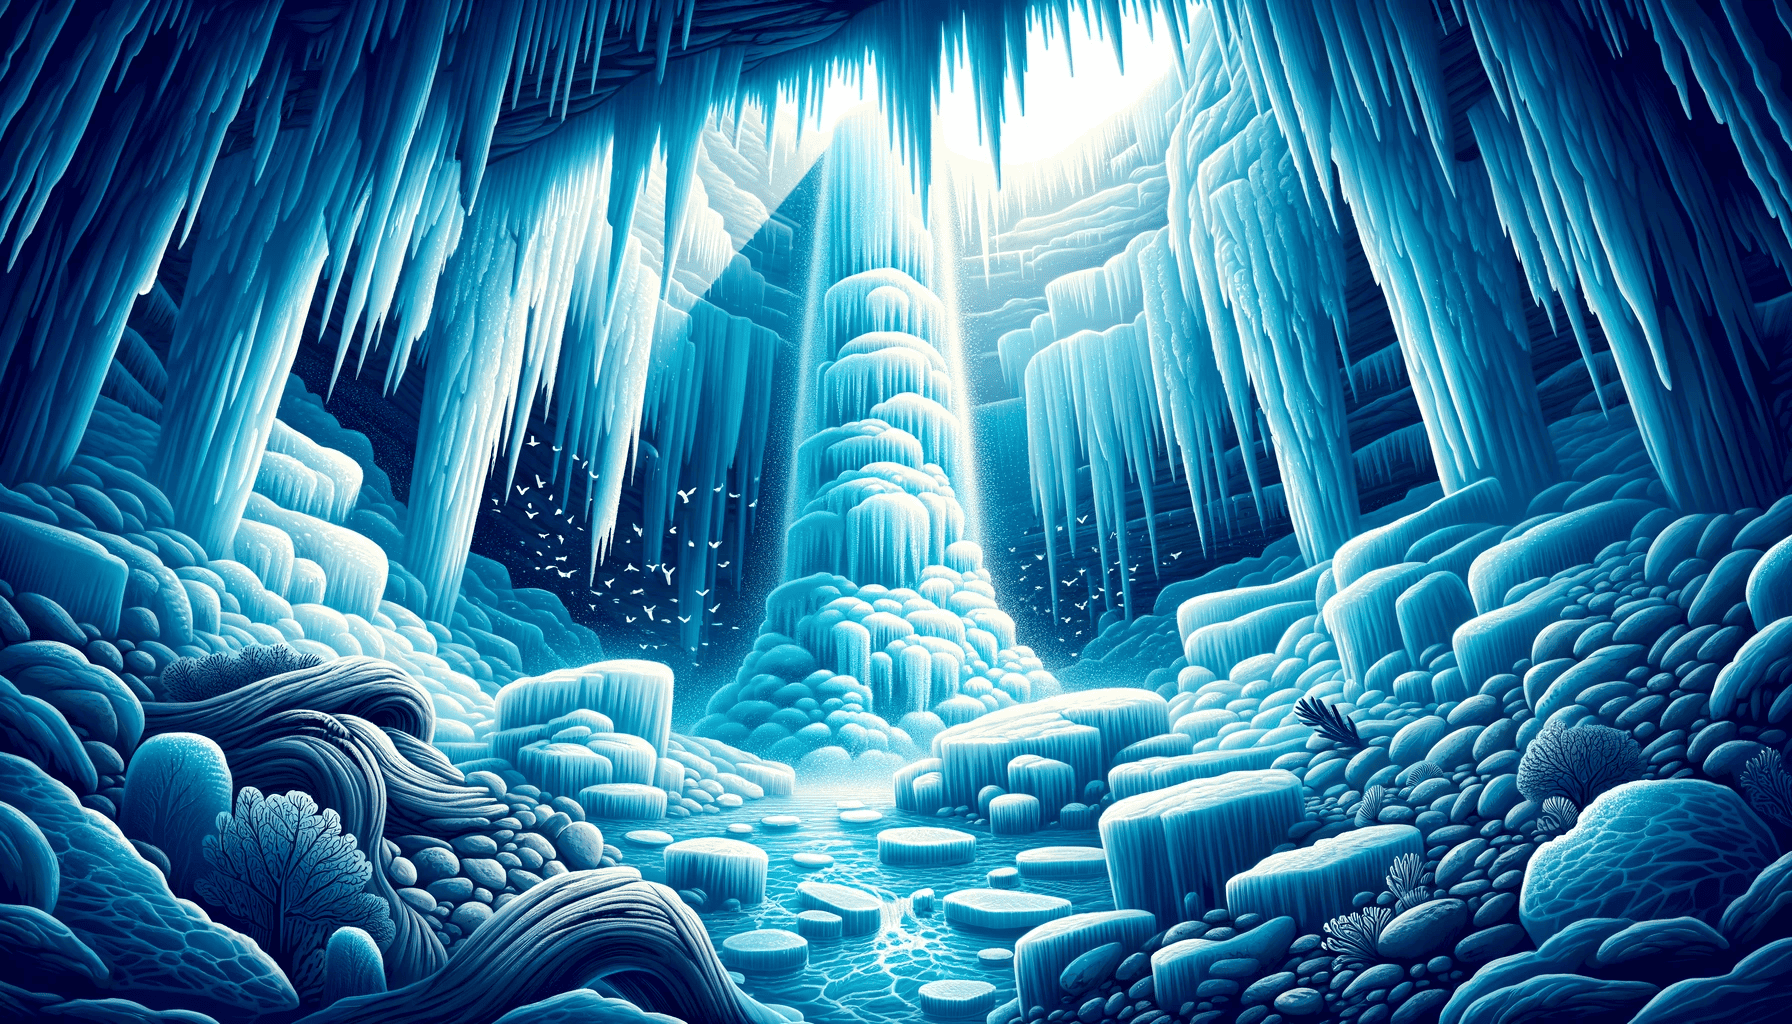 Векторная иллюстрация замерзшего водопада, скрытого подо льдом Антарктиды. Когда солнечный свет проникает сквозь лед наверху, он придает завораживающий синий оттенок ниспадающей воде, окруженной окаменелостями древних растений, запертыми во льду.